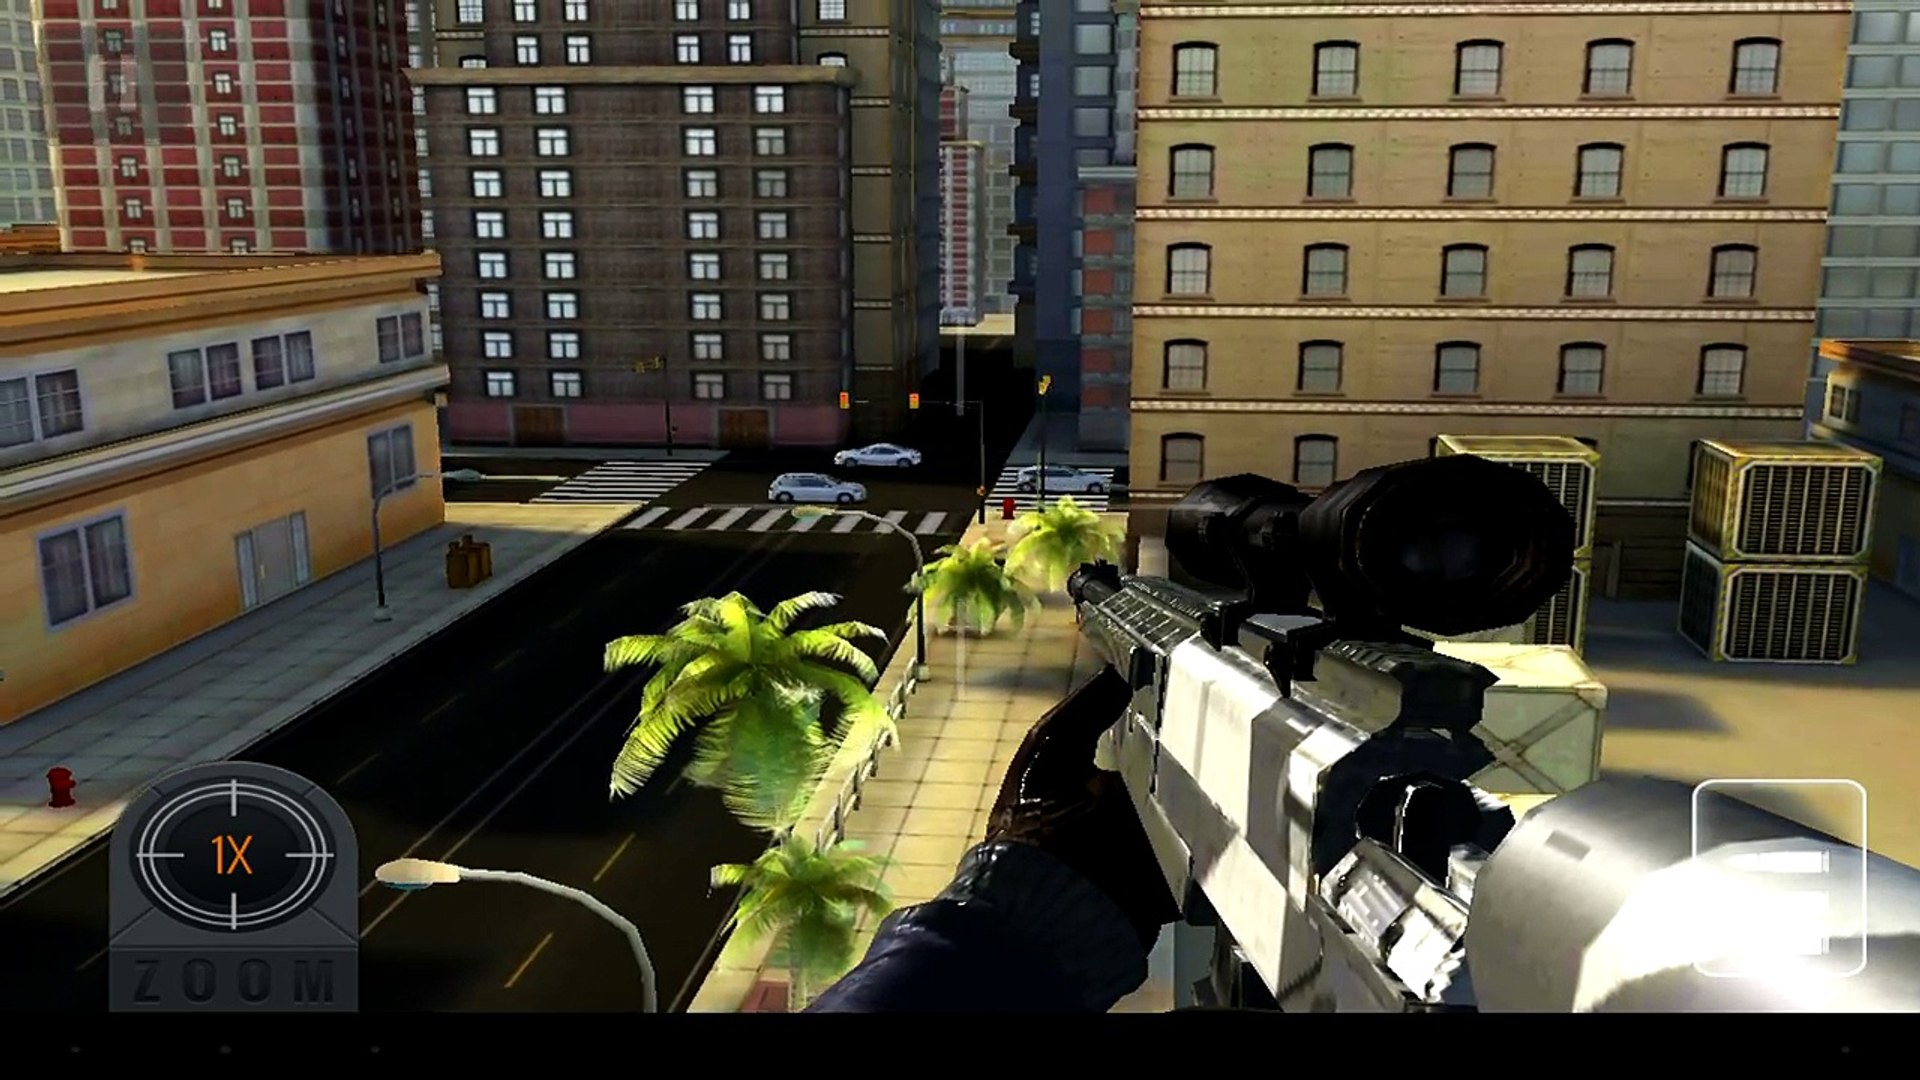 Download Sniper 3D Assassin: Free Games